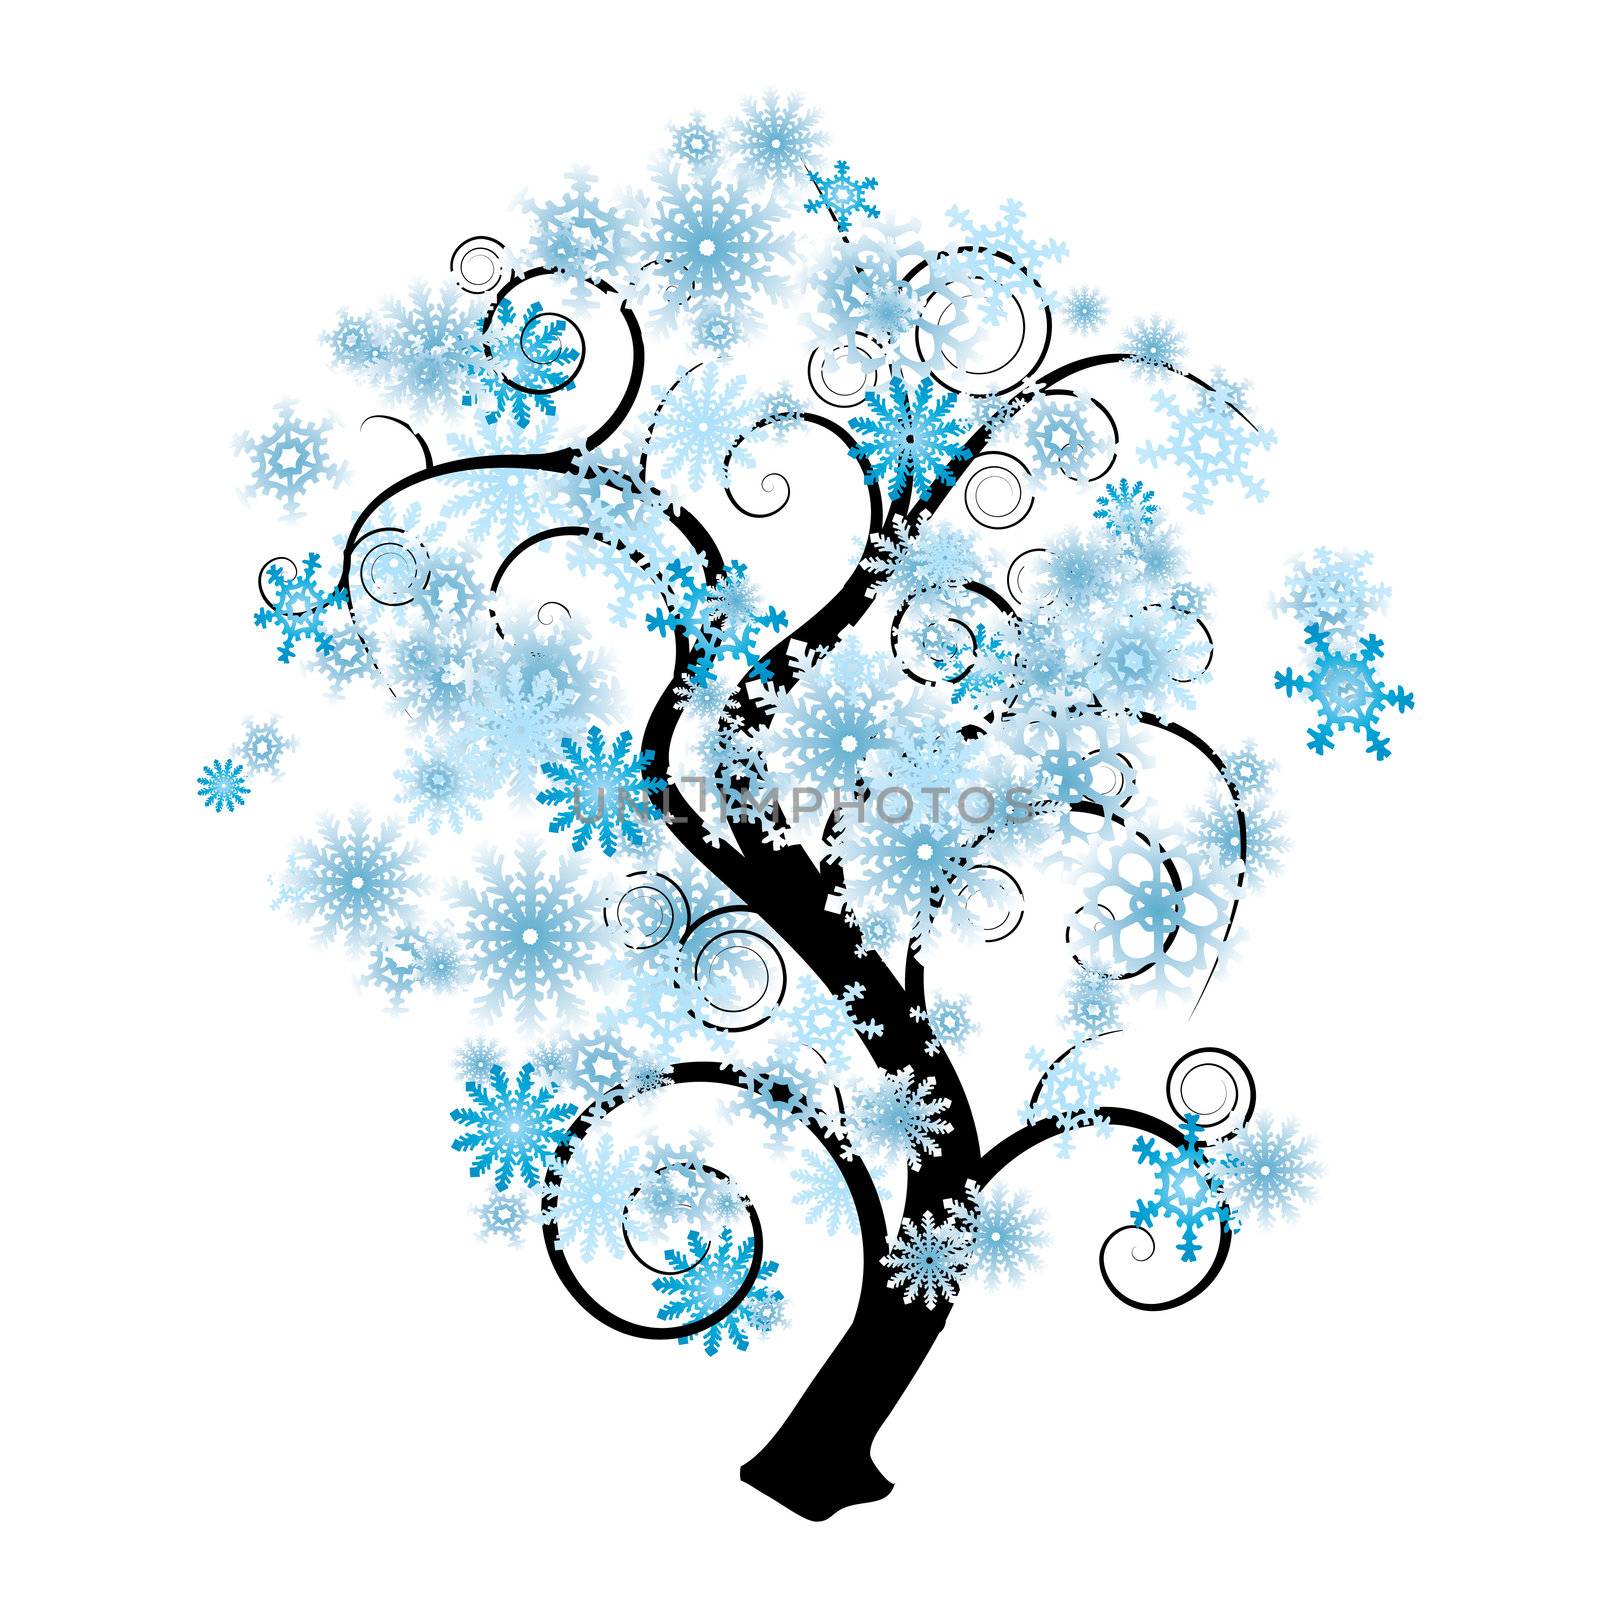 Snowflake tree by nicemonkey